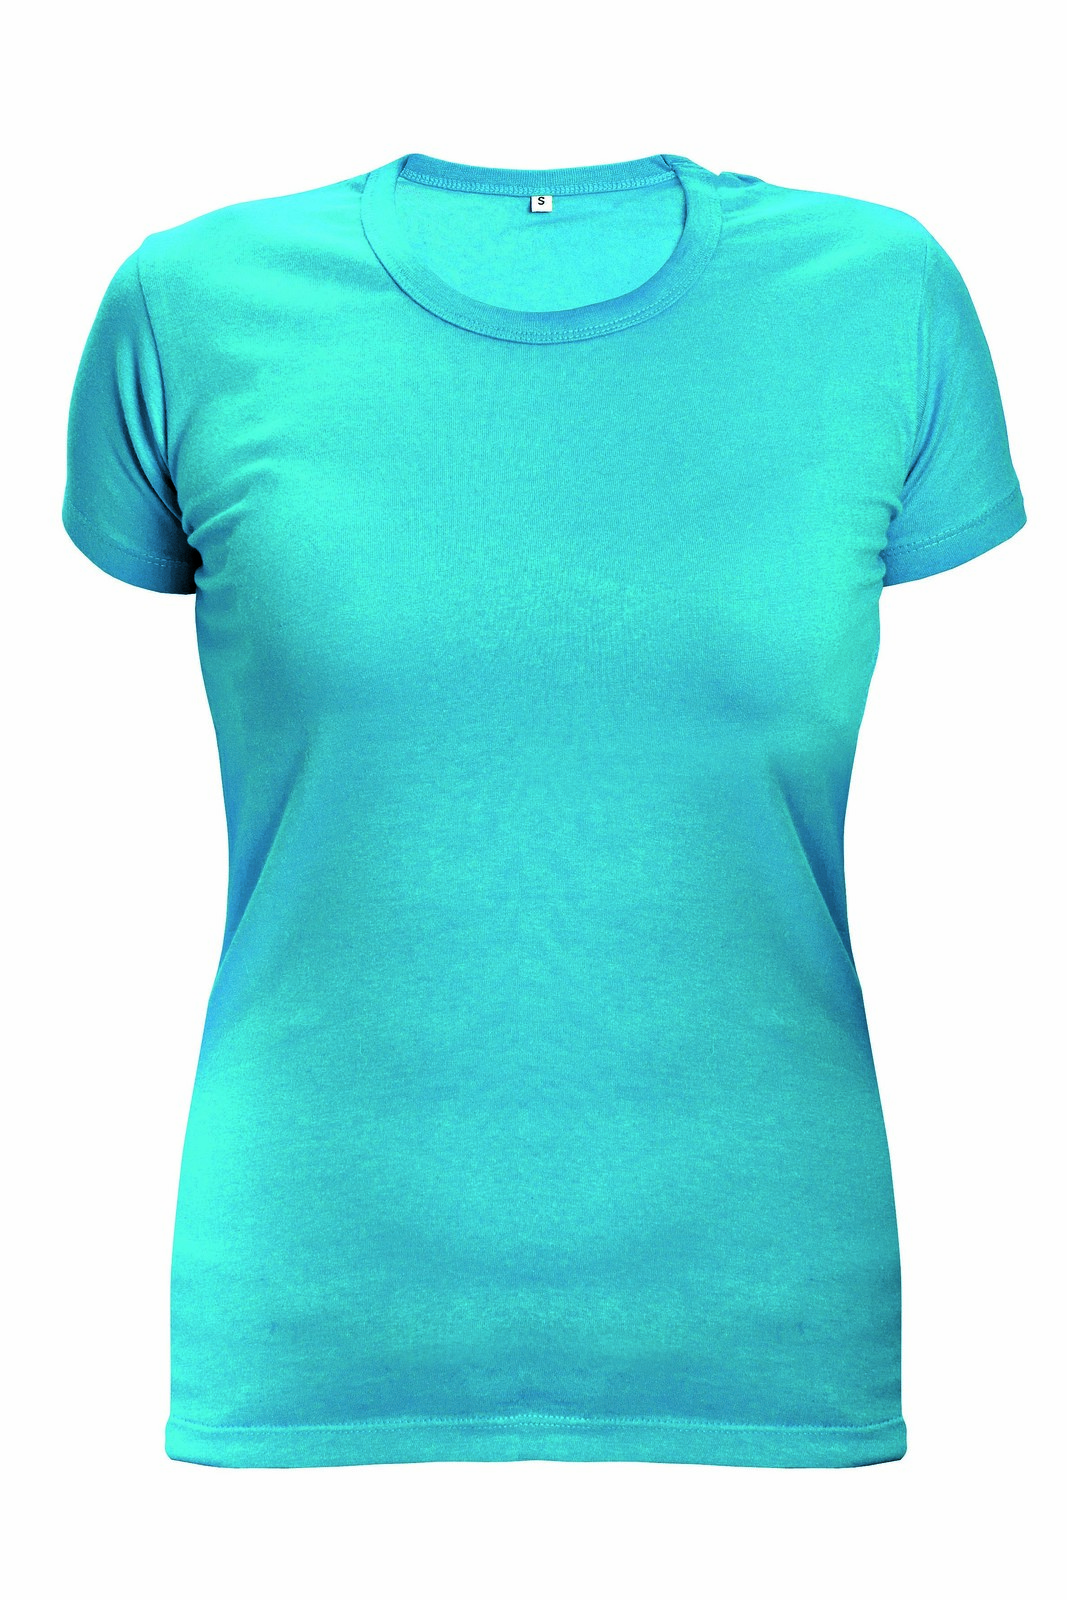 Dámske tričko s krátkym rukávom Surma Lady - veľkosť: M, farba: tyrkysová